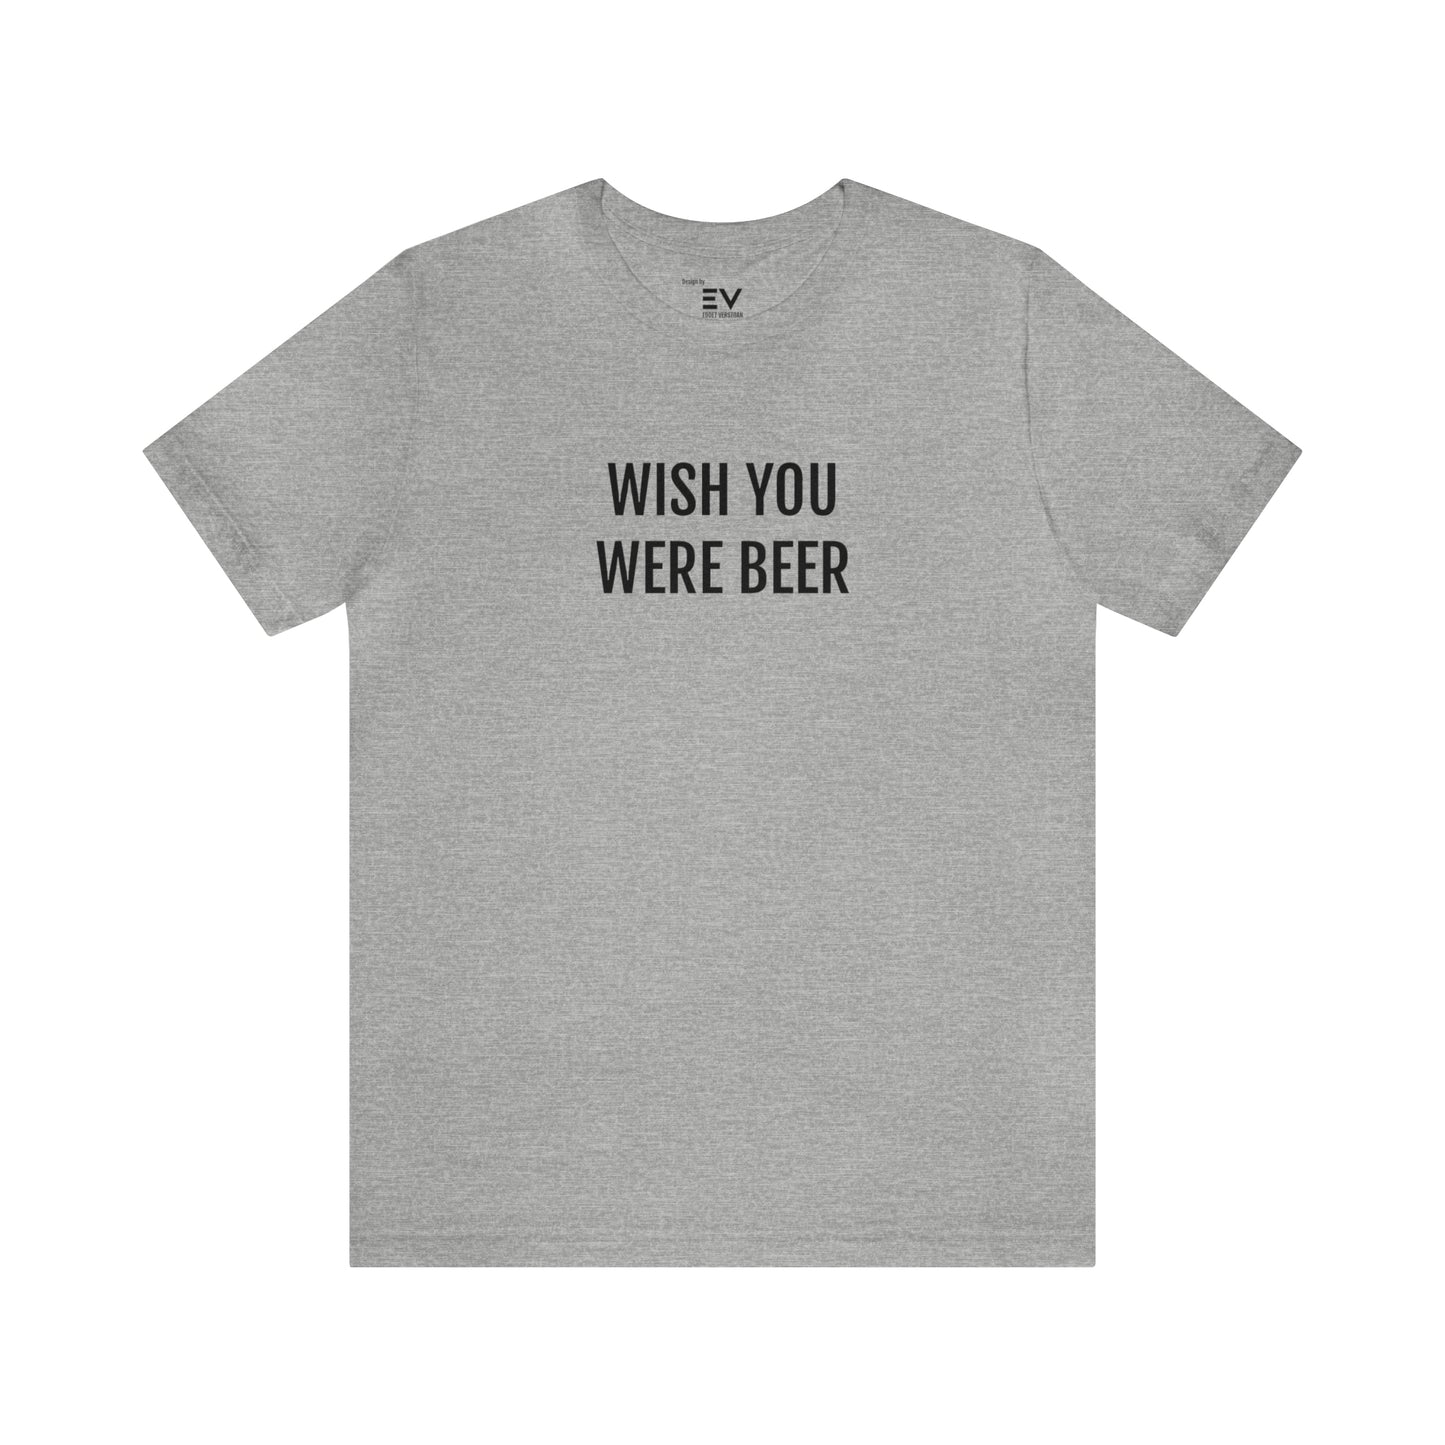 Grijze Wish you were beer t-shirt - T-shrits met tekst kopen